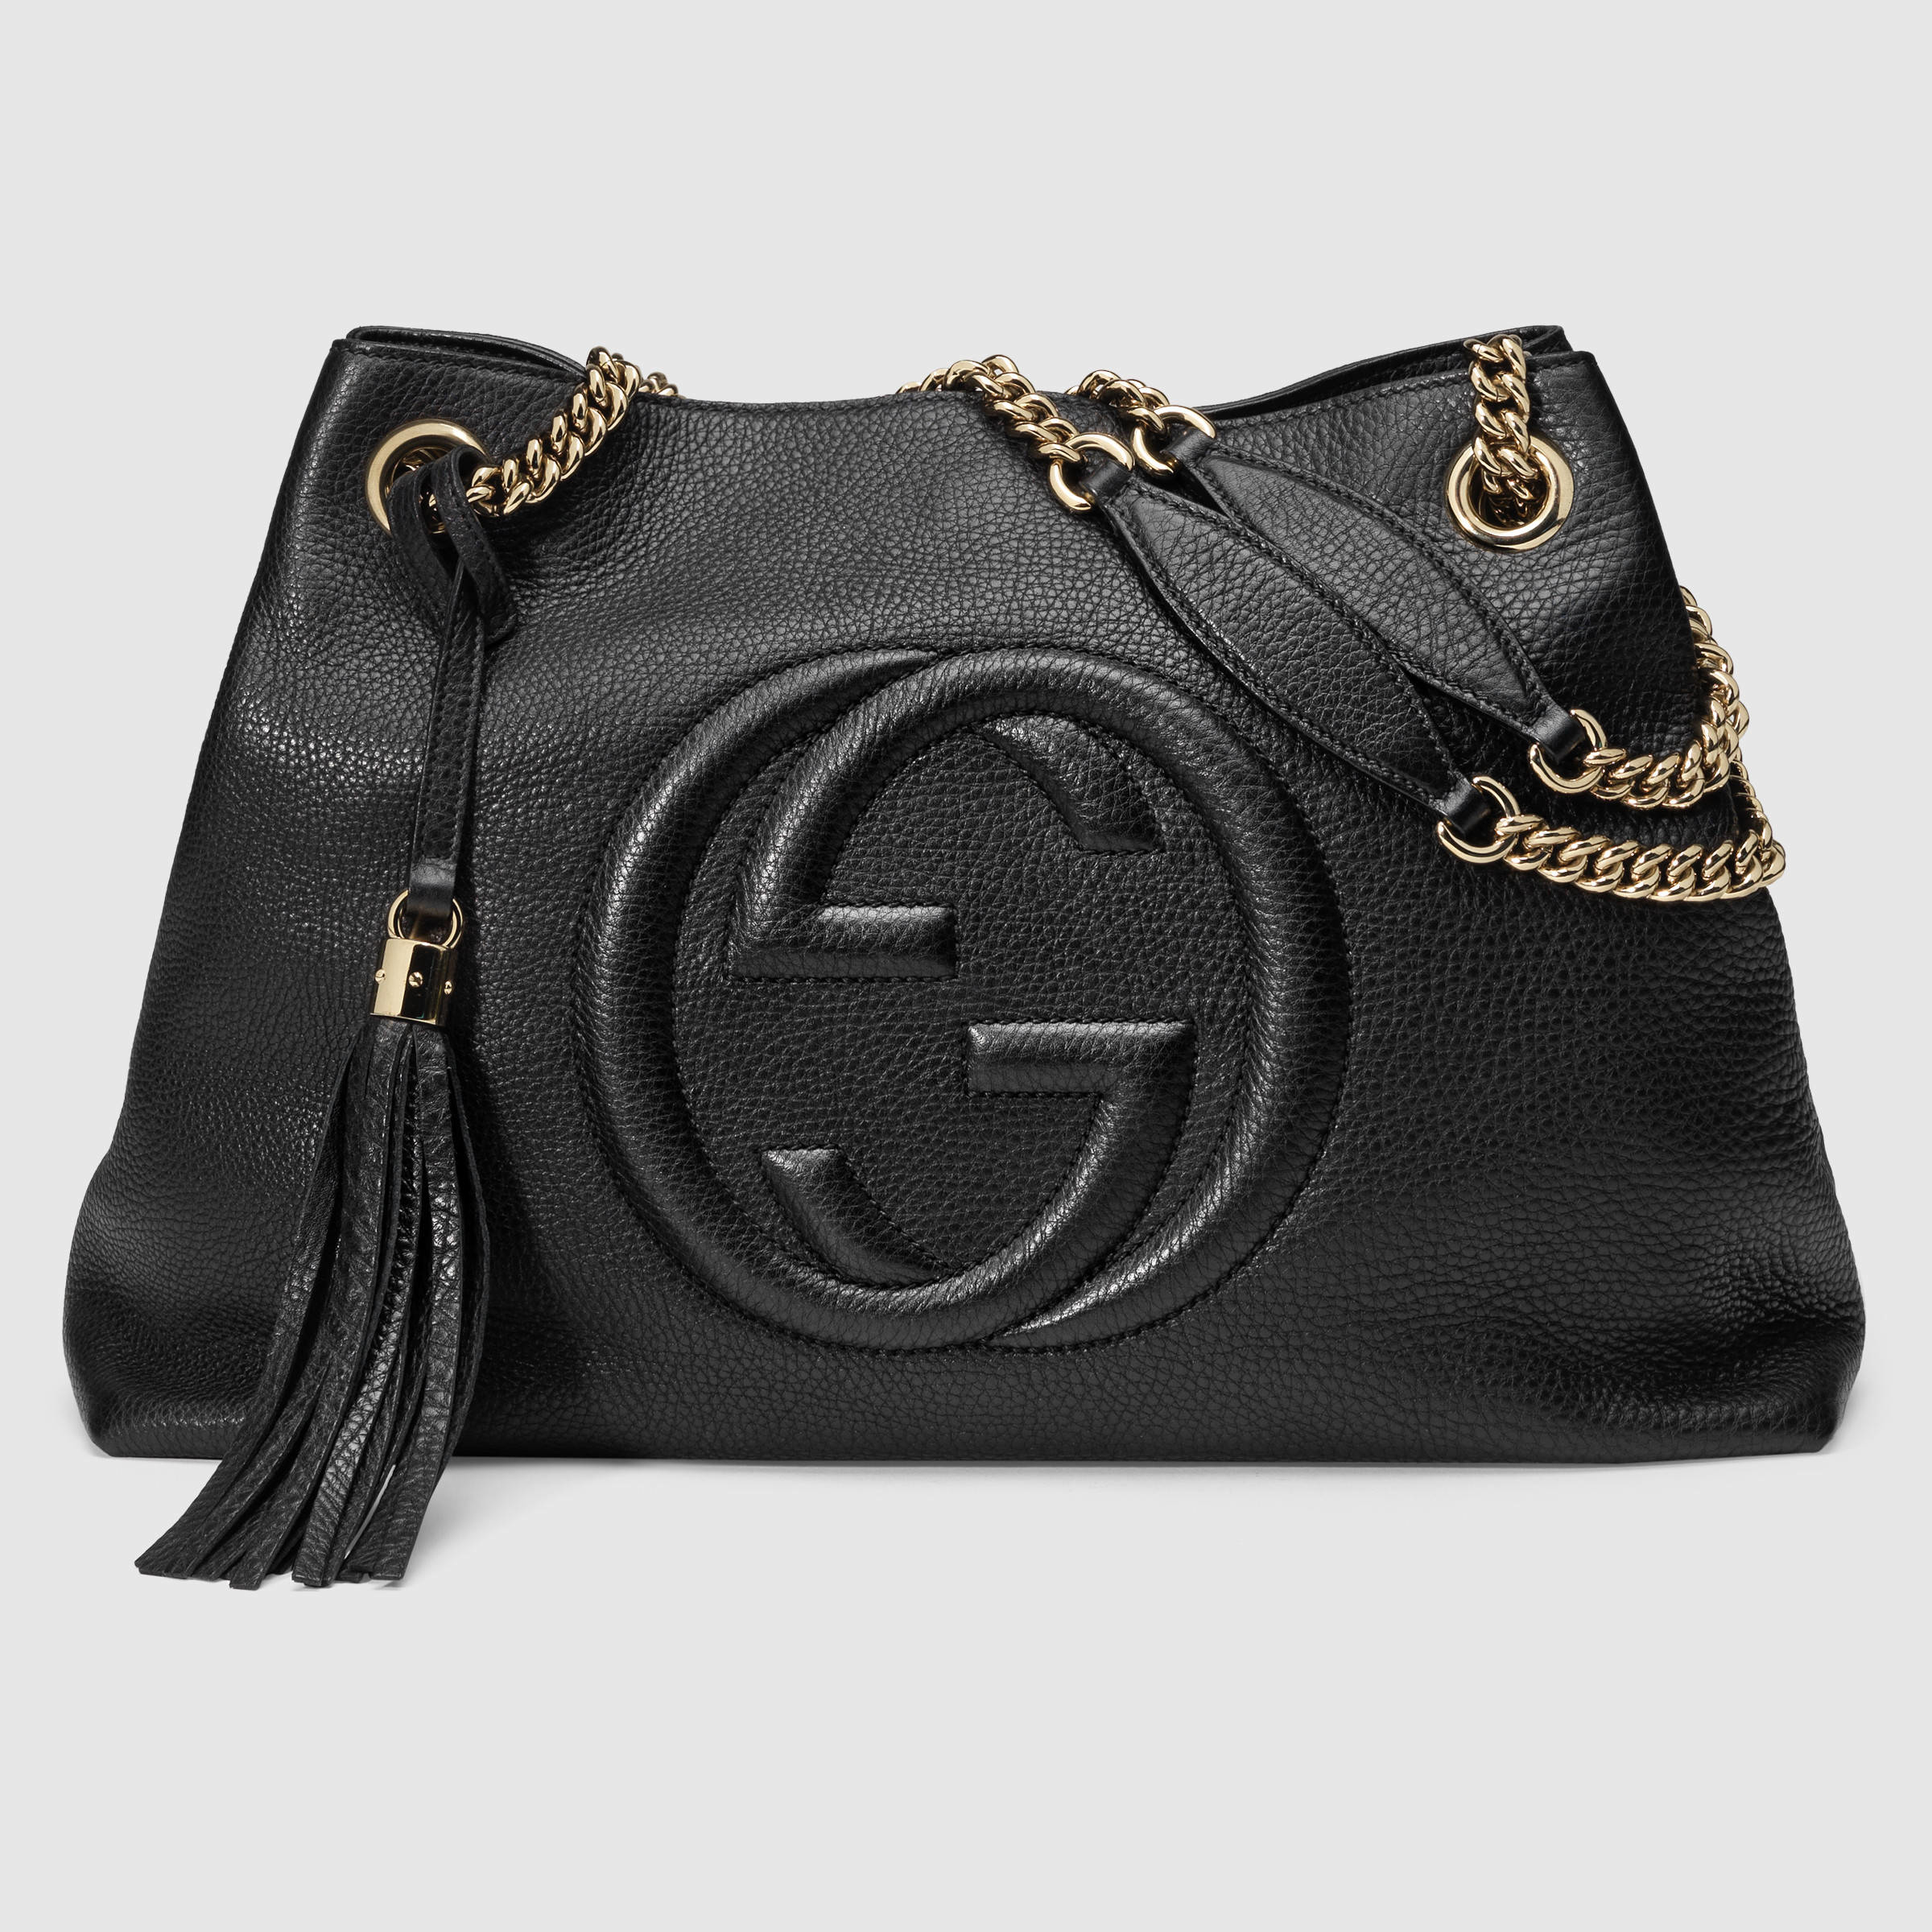 Gucci Soho Leather Shoulder Bag in Black - Lyst